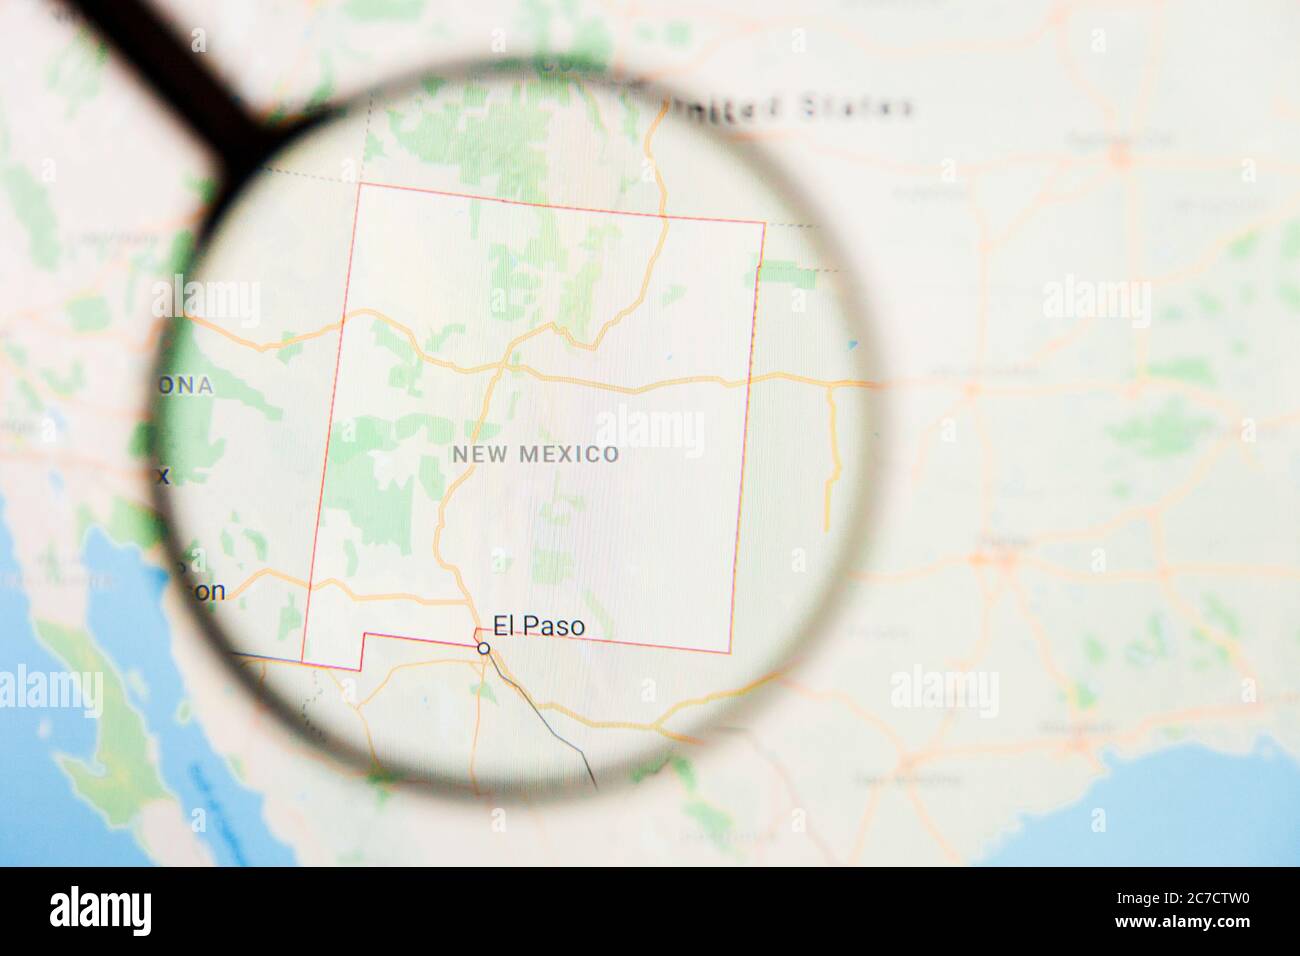 Los Angeles, California, USA - 15. März 2019: New Mexico, NM State of America Visualisierung illustratives Konzept auf dem Bildschirm durch Vergrößerungen Stockfoto